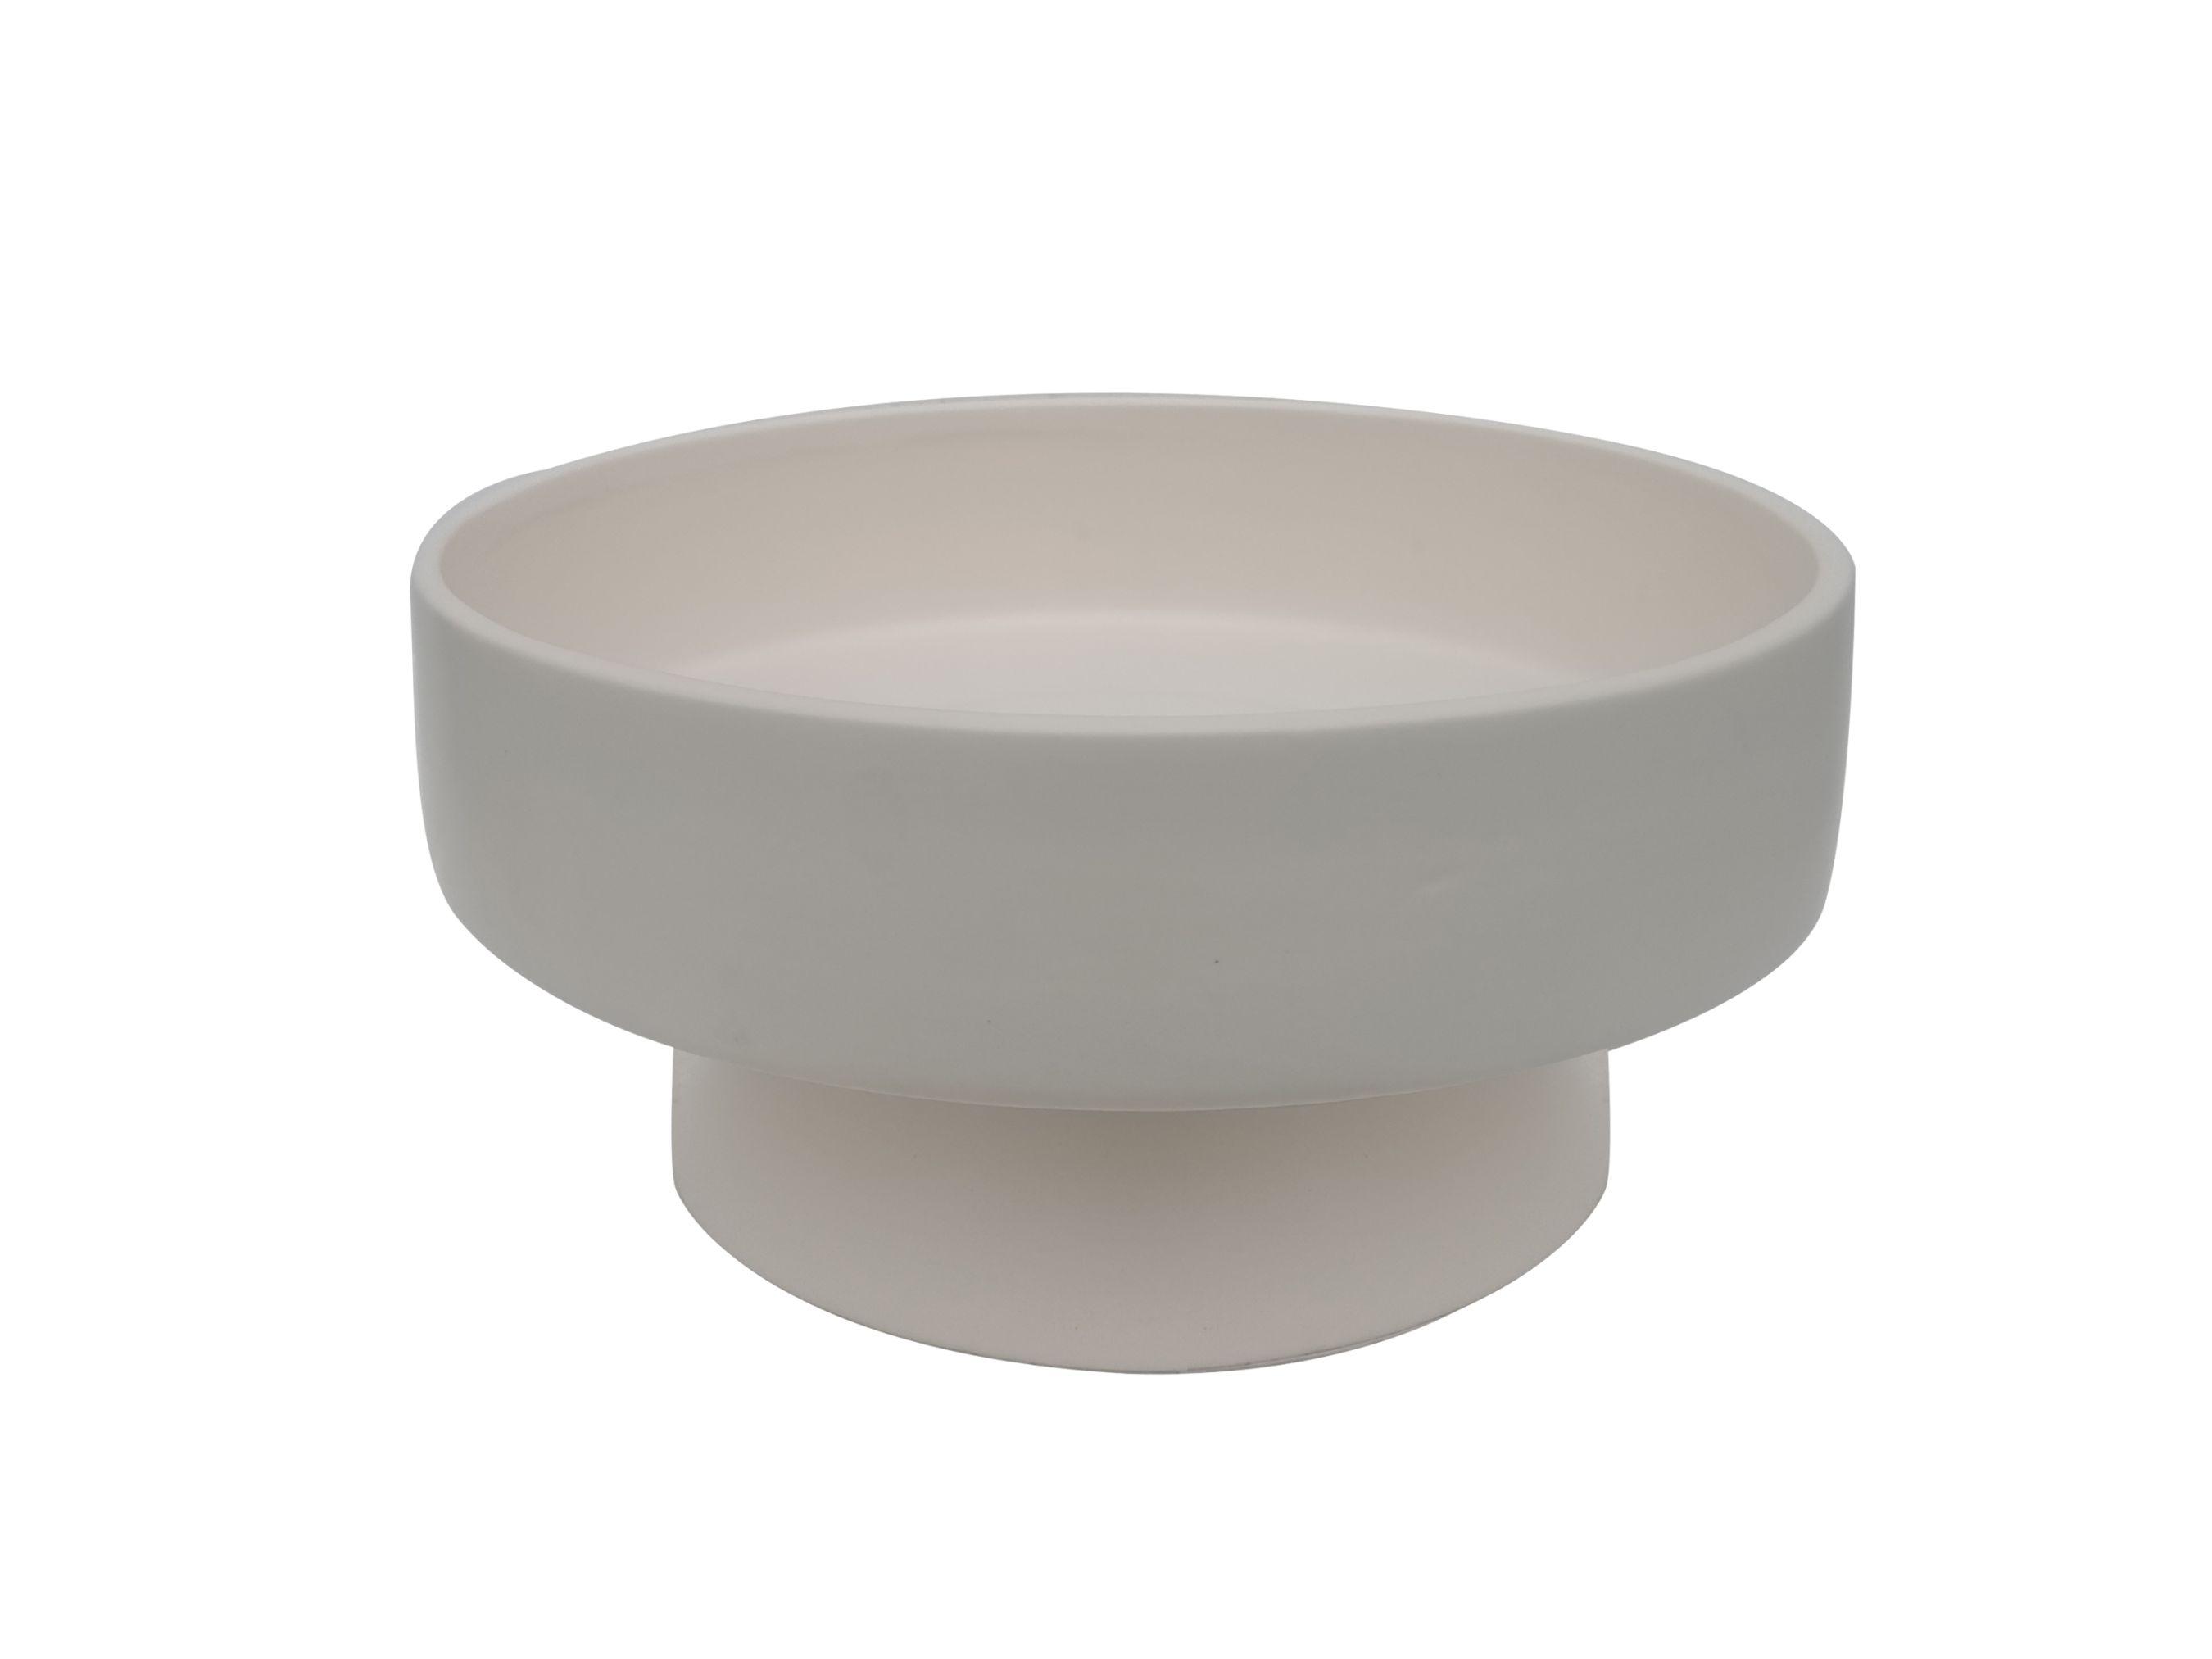 Dekoschale Bowl aus Keramik - Weiss, Modern, Keramik (24,5/12cm) - Modern Living